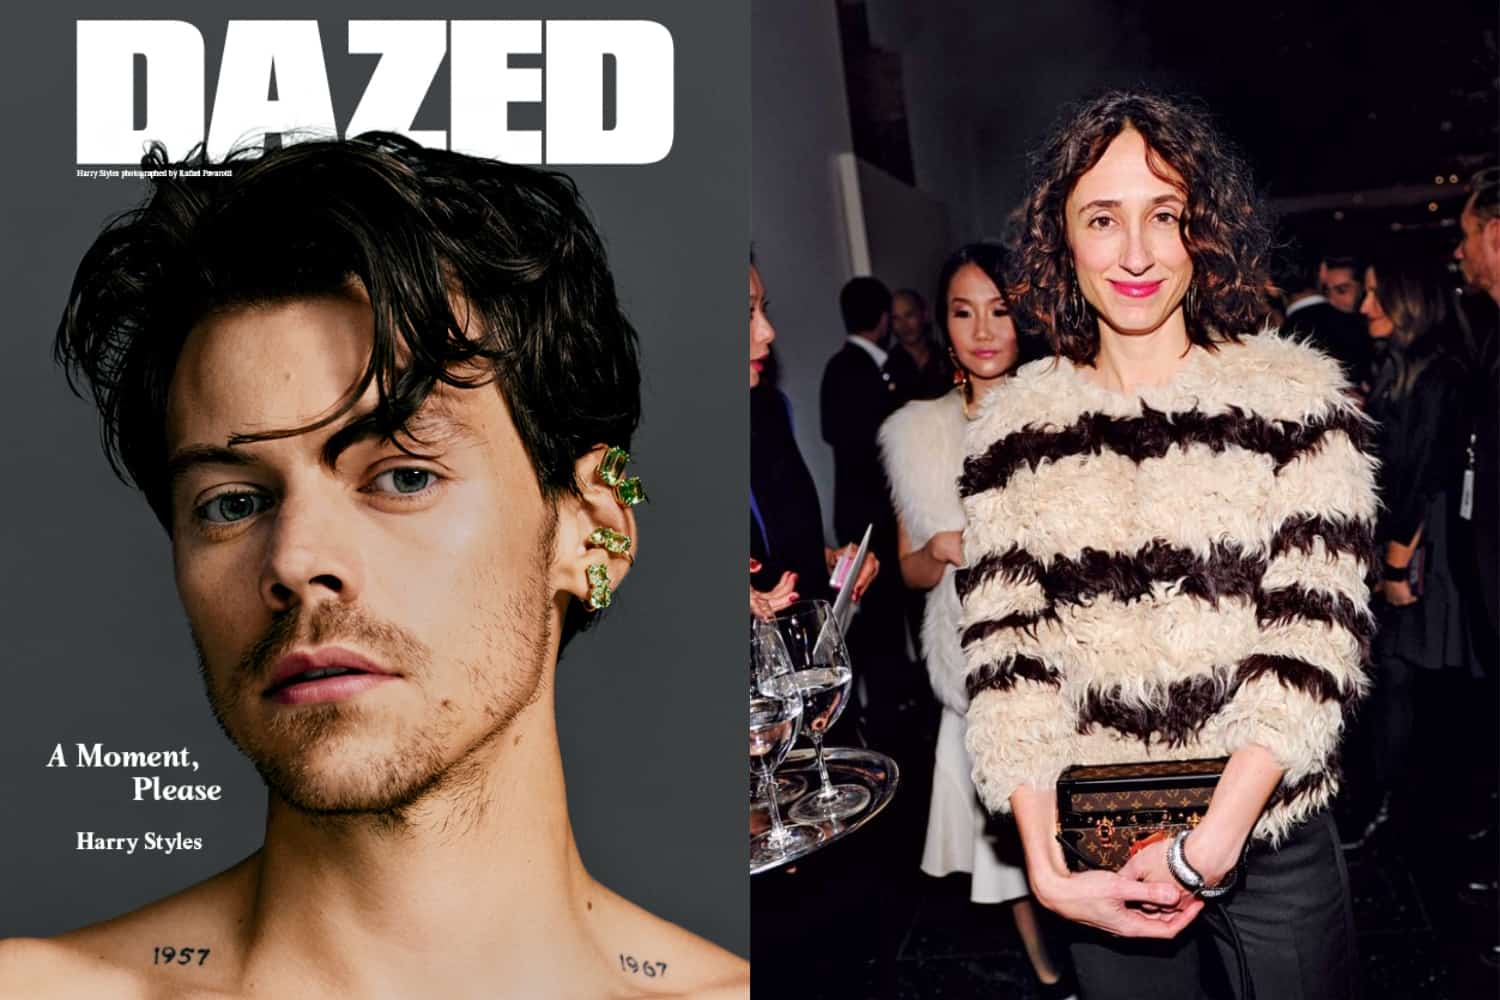 Dazed Magazine, Summer 2021. First issue under new Editor-in-Chief